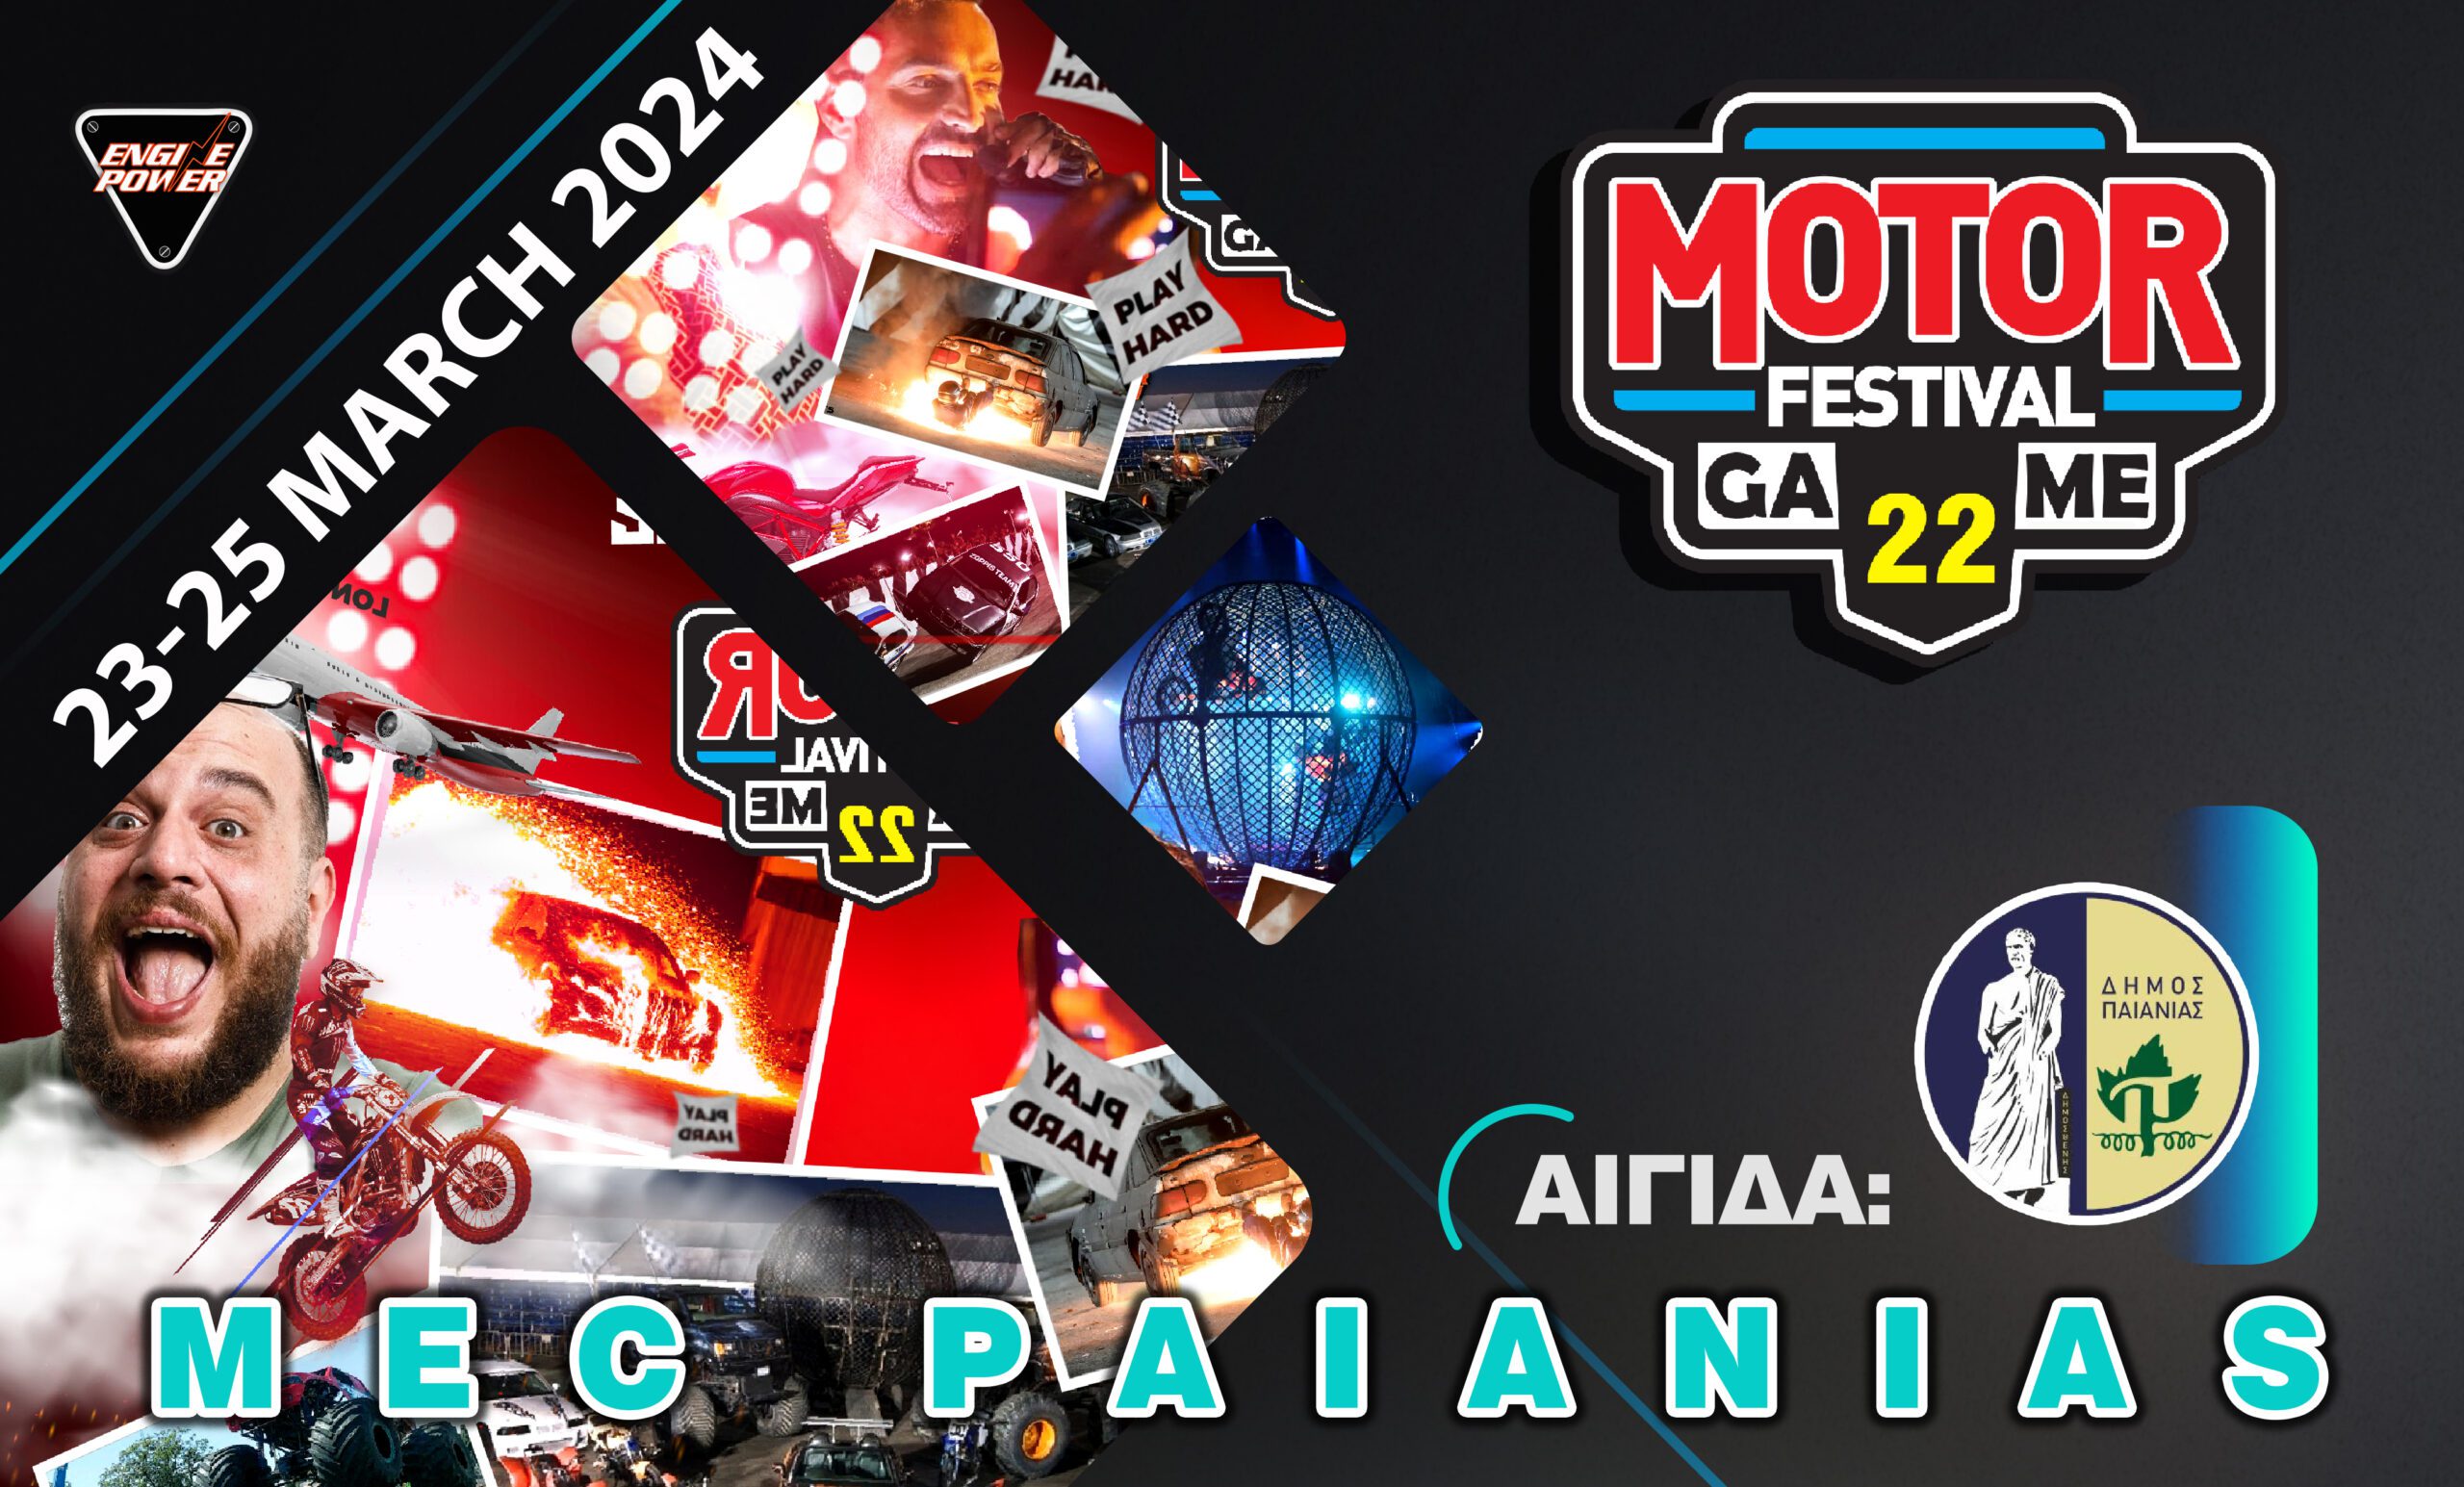 Δήμος Παιανίας: Το 22ο Motor Festival υπό την αιγίδα του δήμου Παιανίας